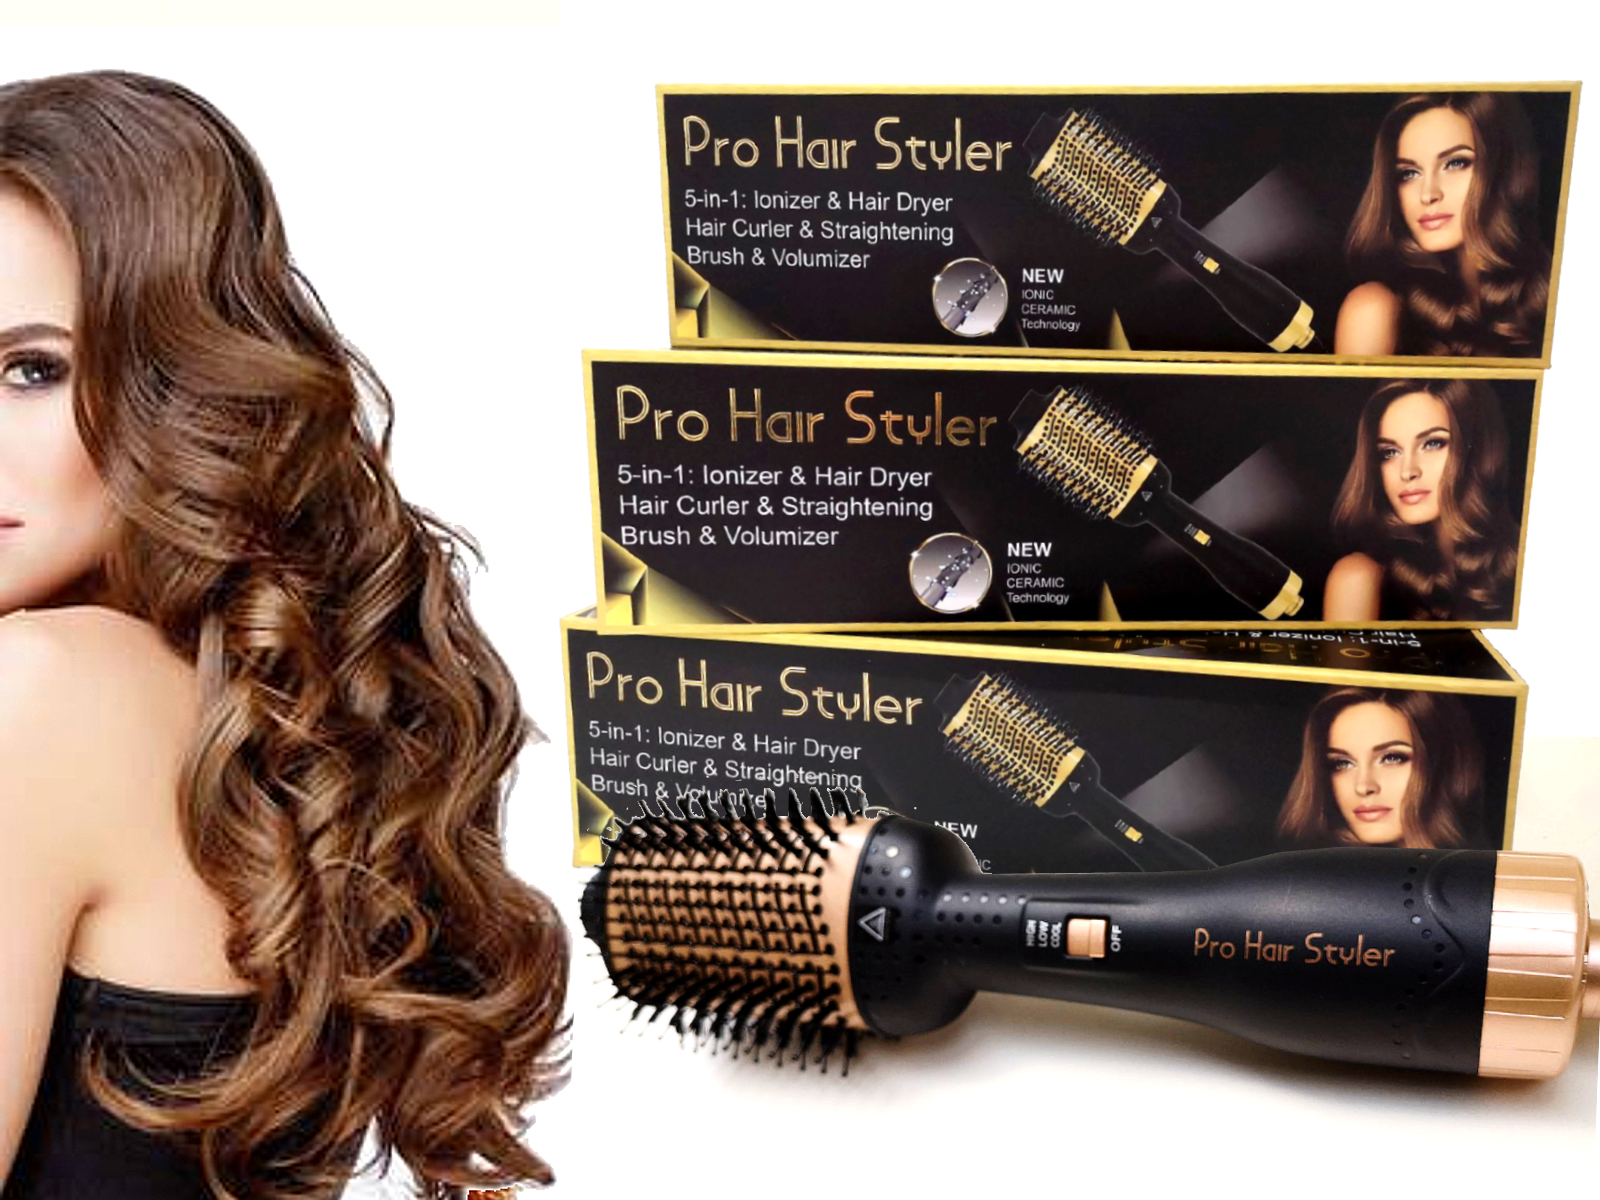 PRO HAIR STYLER, 5-in-1 Ionizer & Hair Dryer & Hair Curler & Straightening  Brush & Volumizer